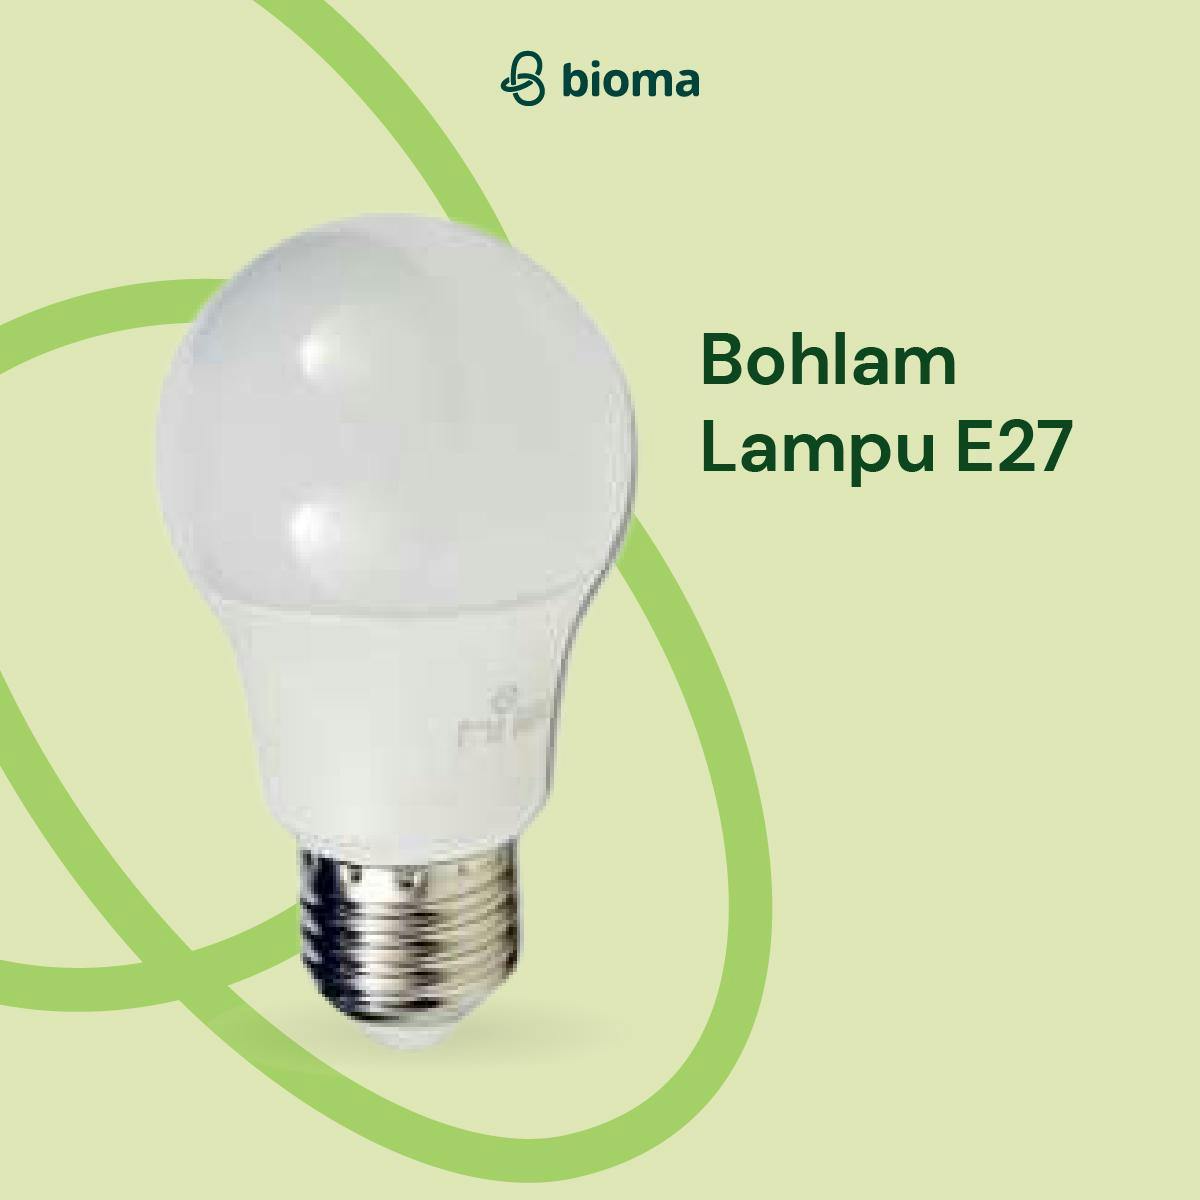 Image 377 Bohlam Lampu E27